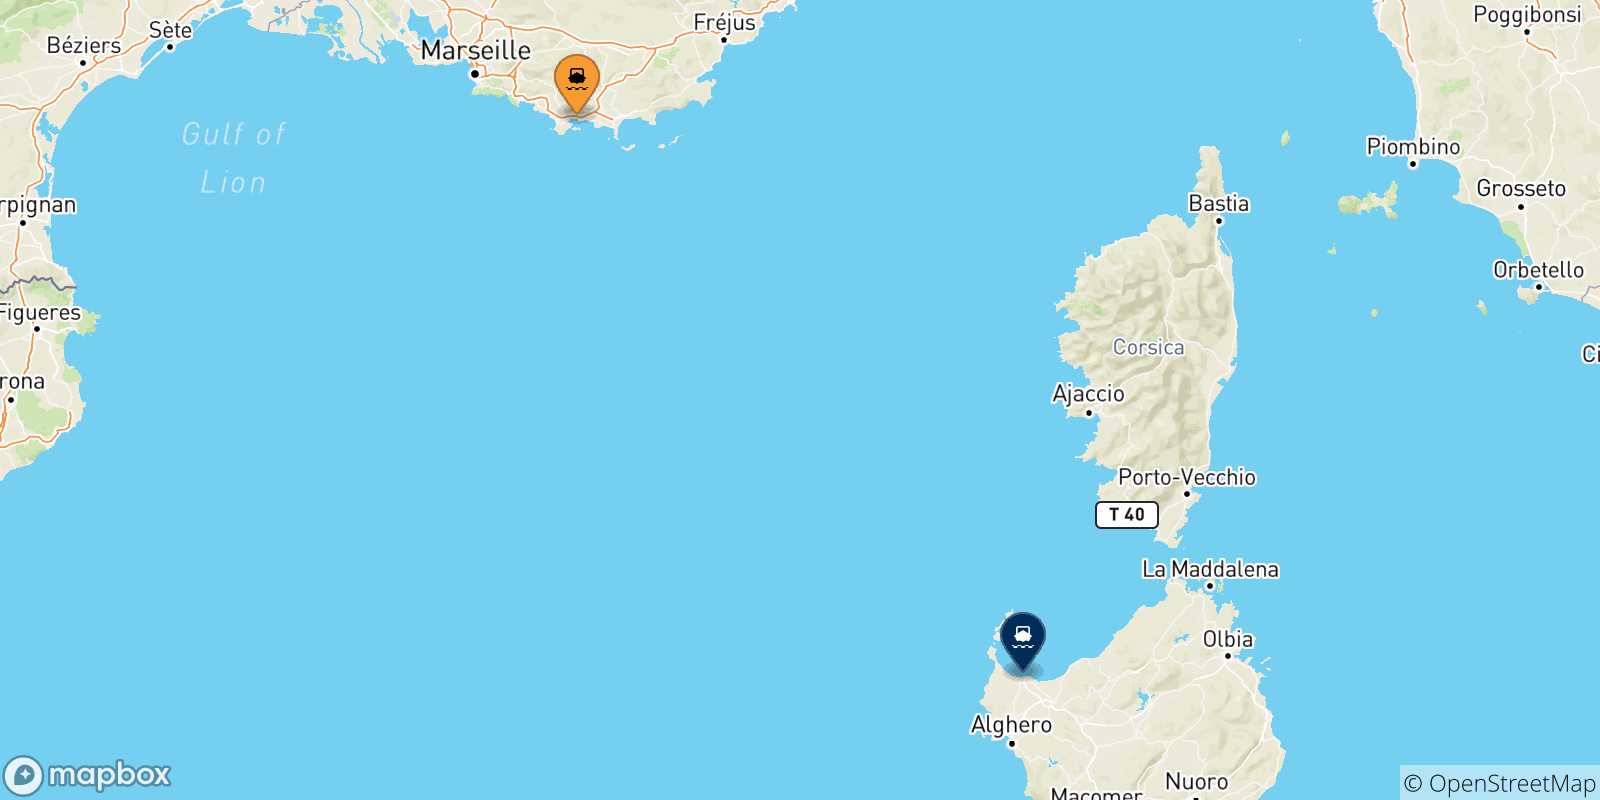 Mappa delle possibili rotte tra Tolone e la Sardegna